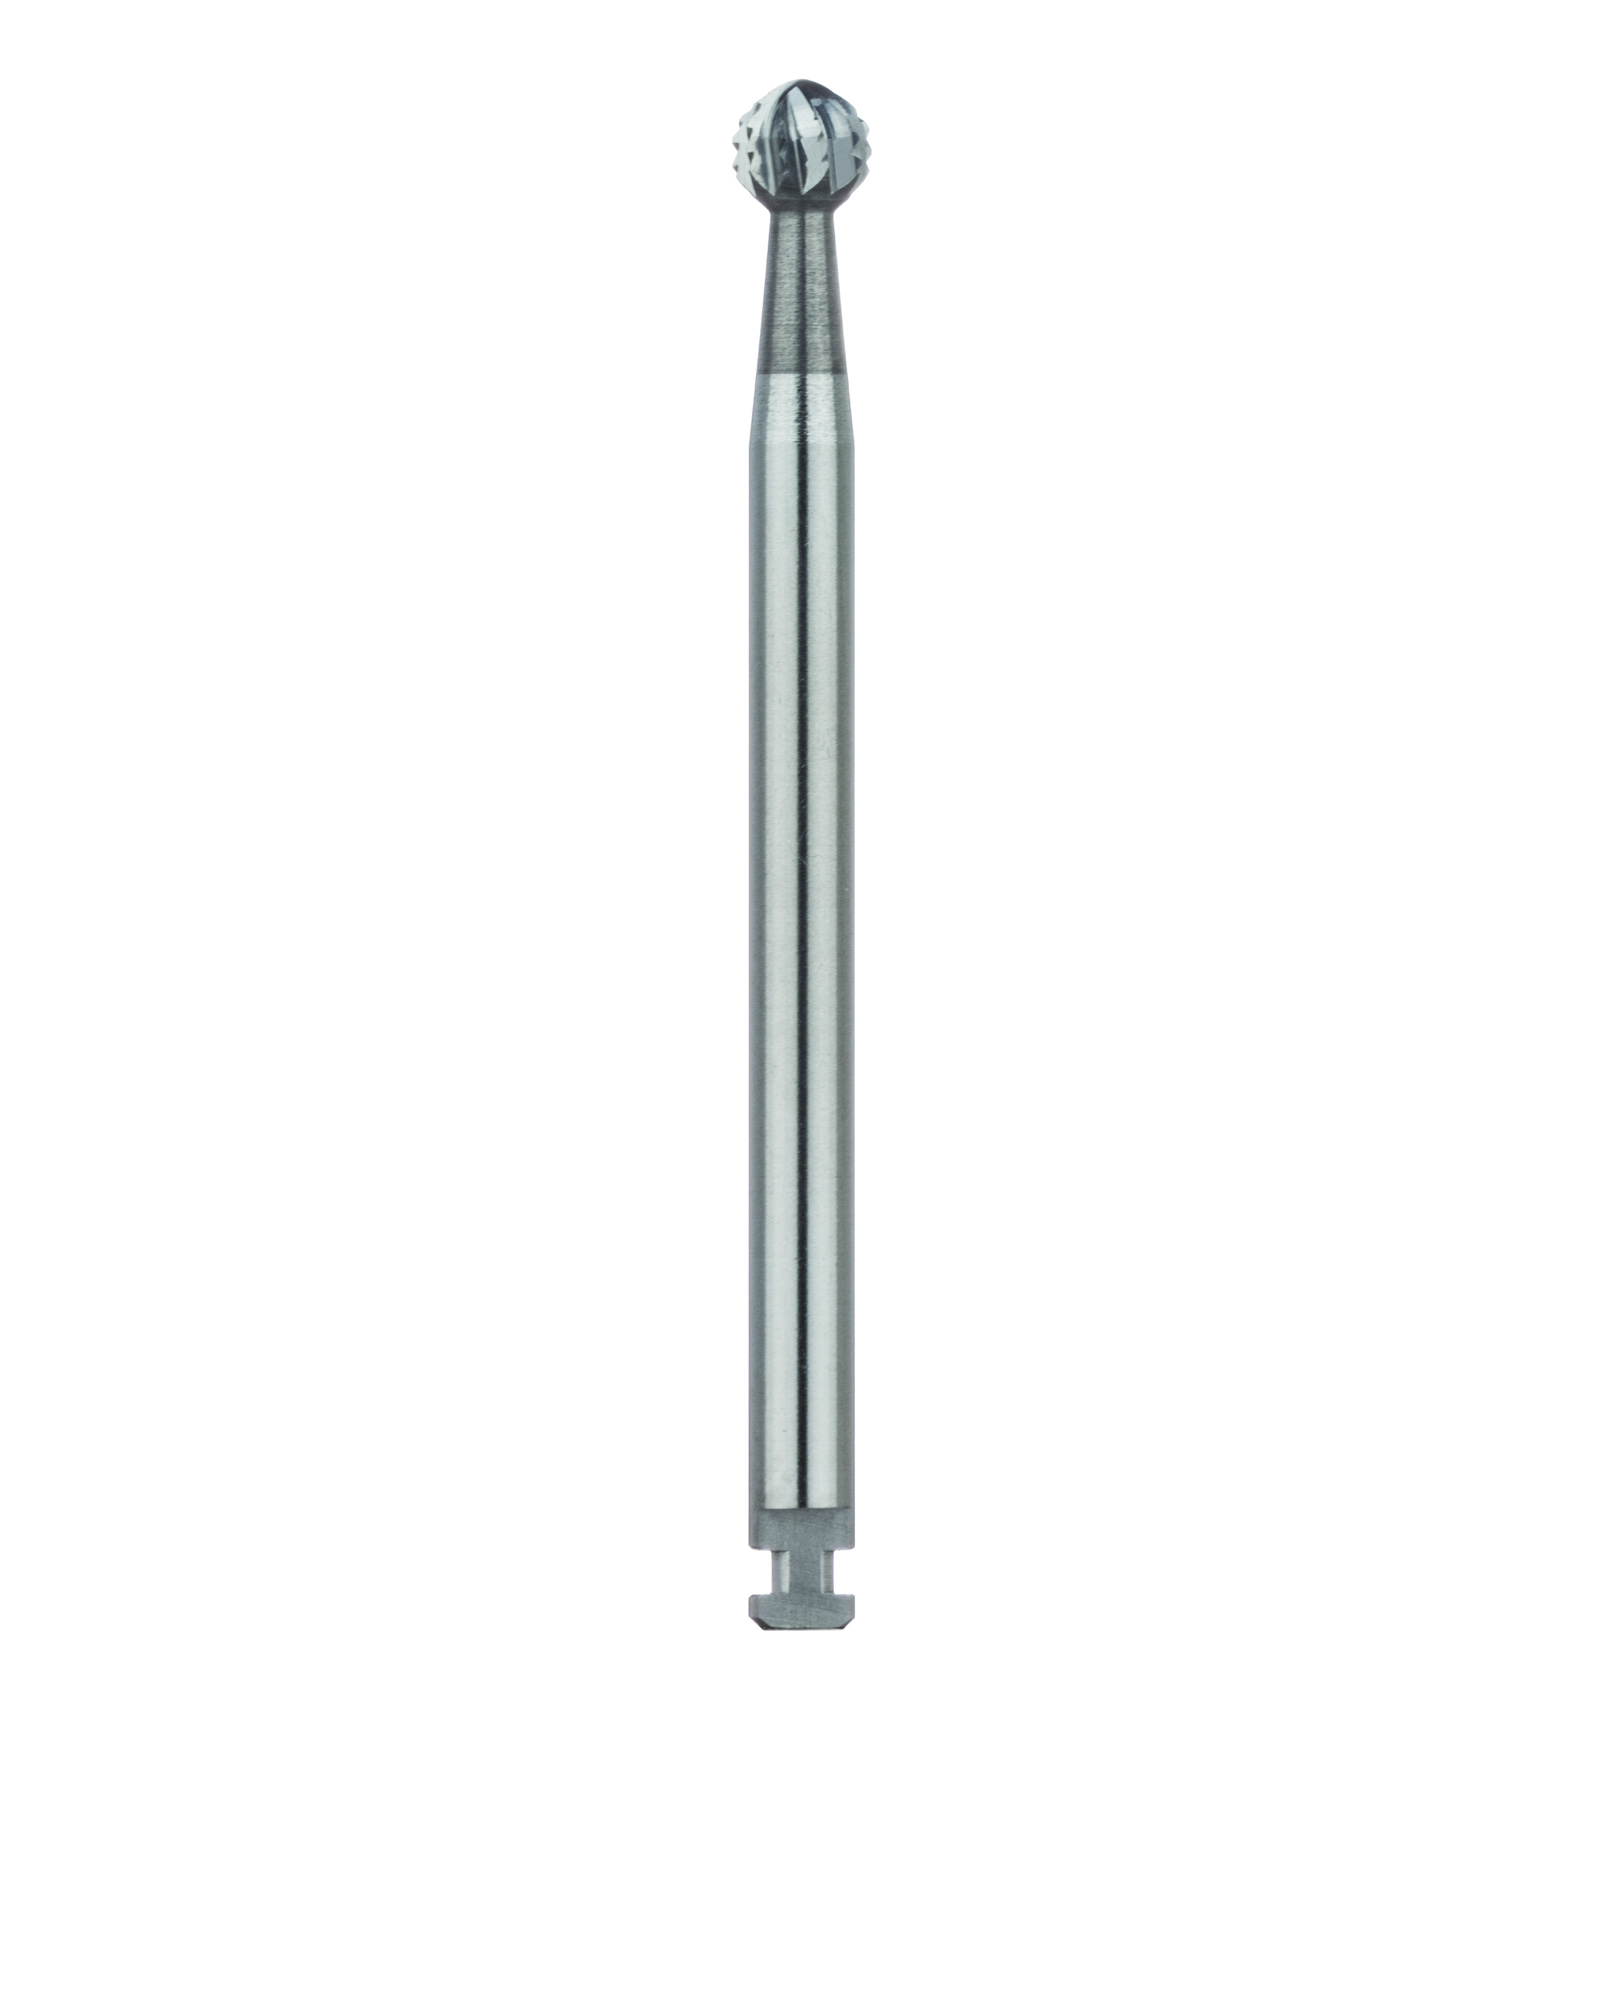 HM141A-031-RAX Surgical Round Carbide Bur, 3.1 mm Ø, RAXL